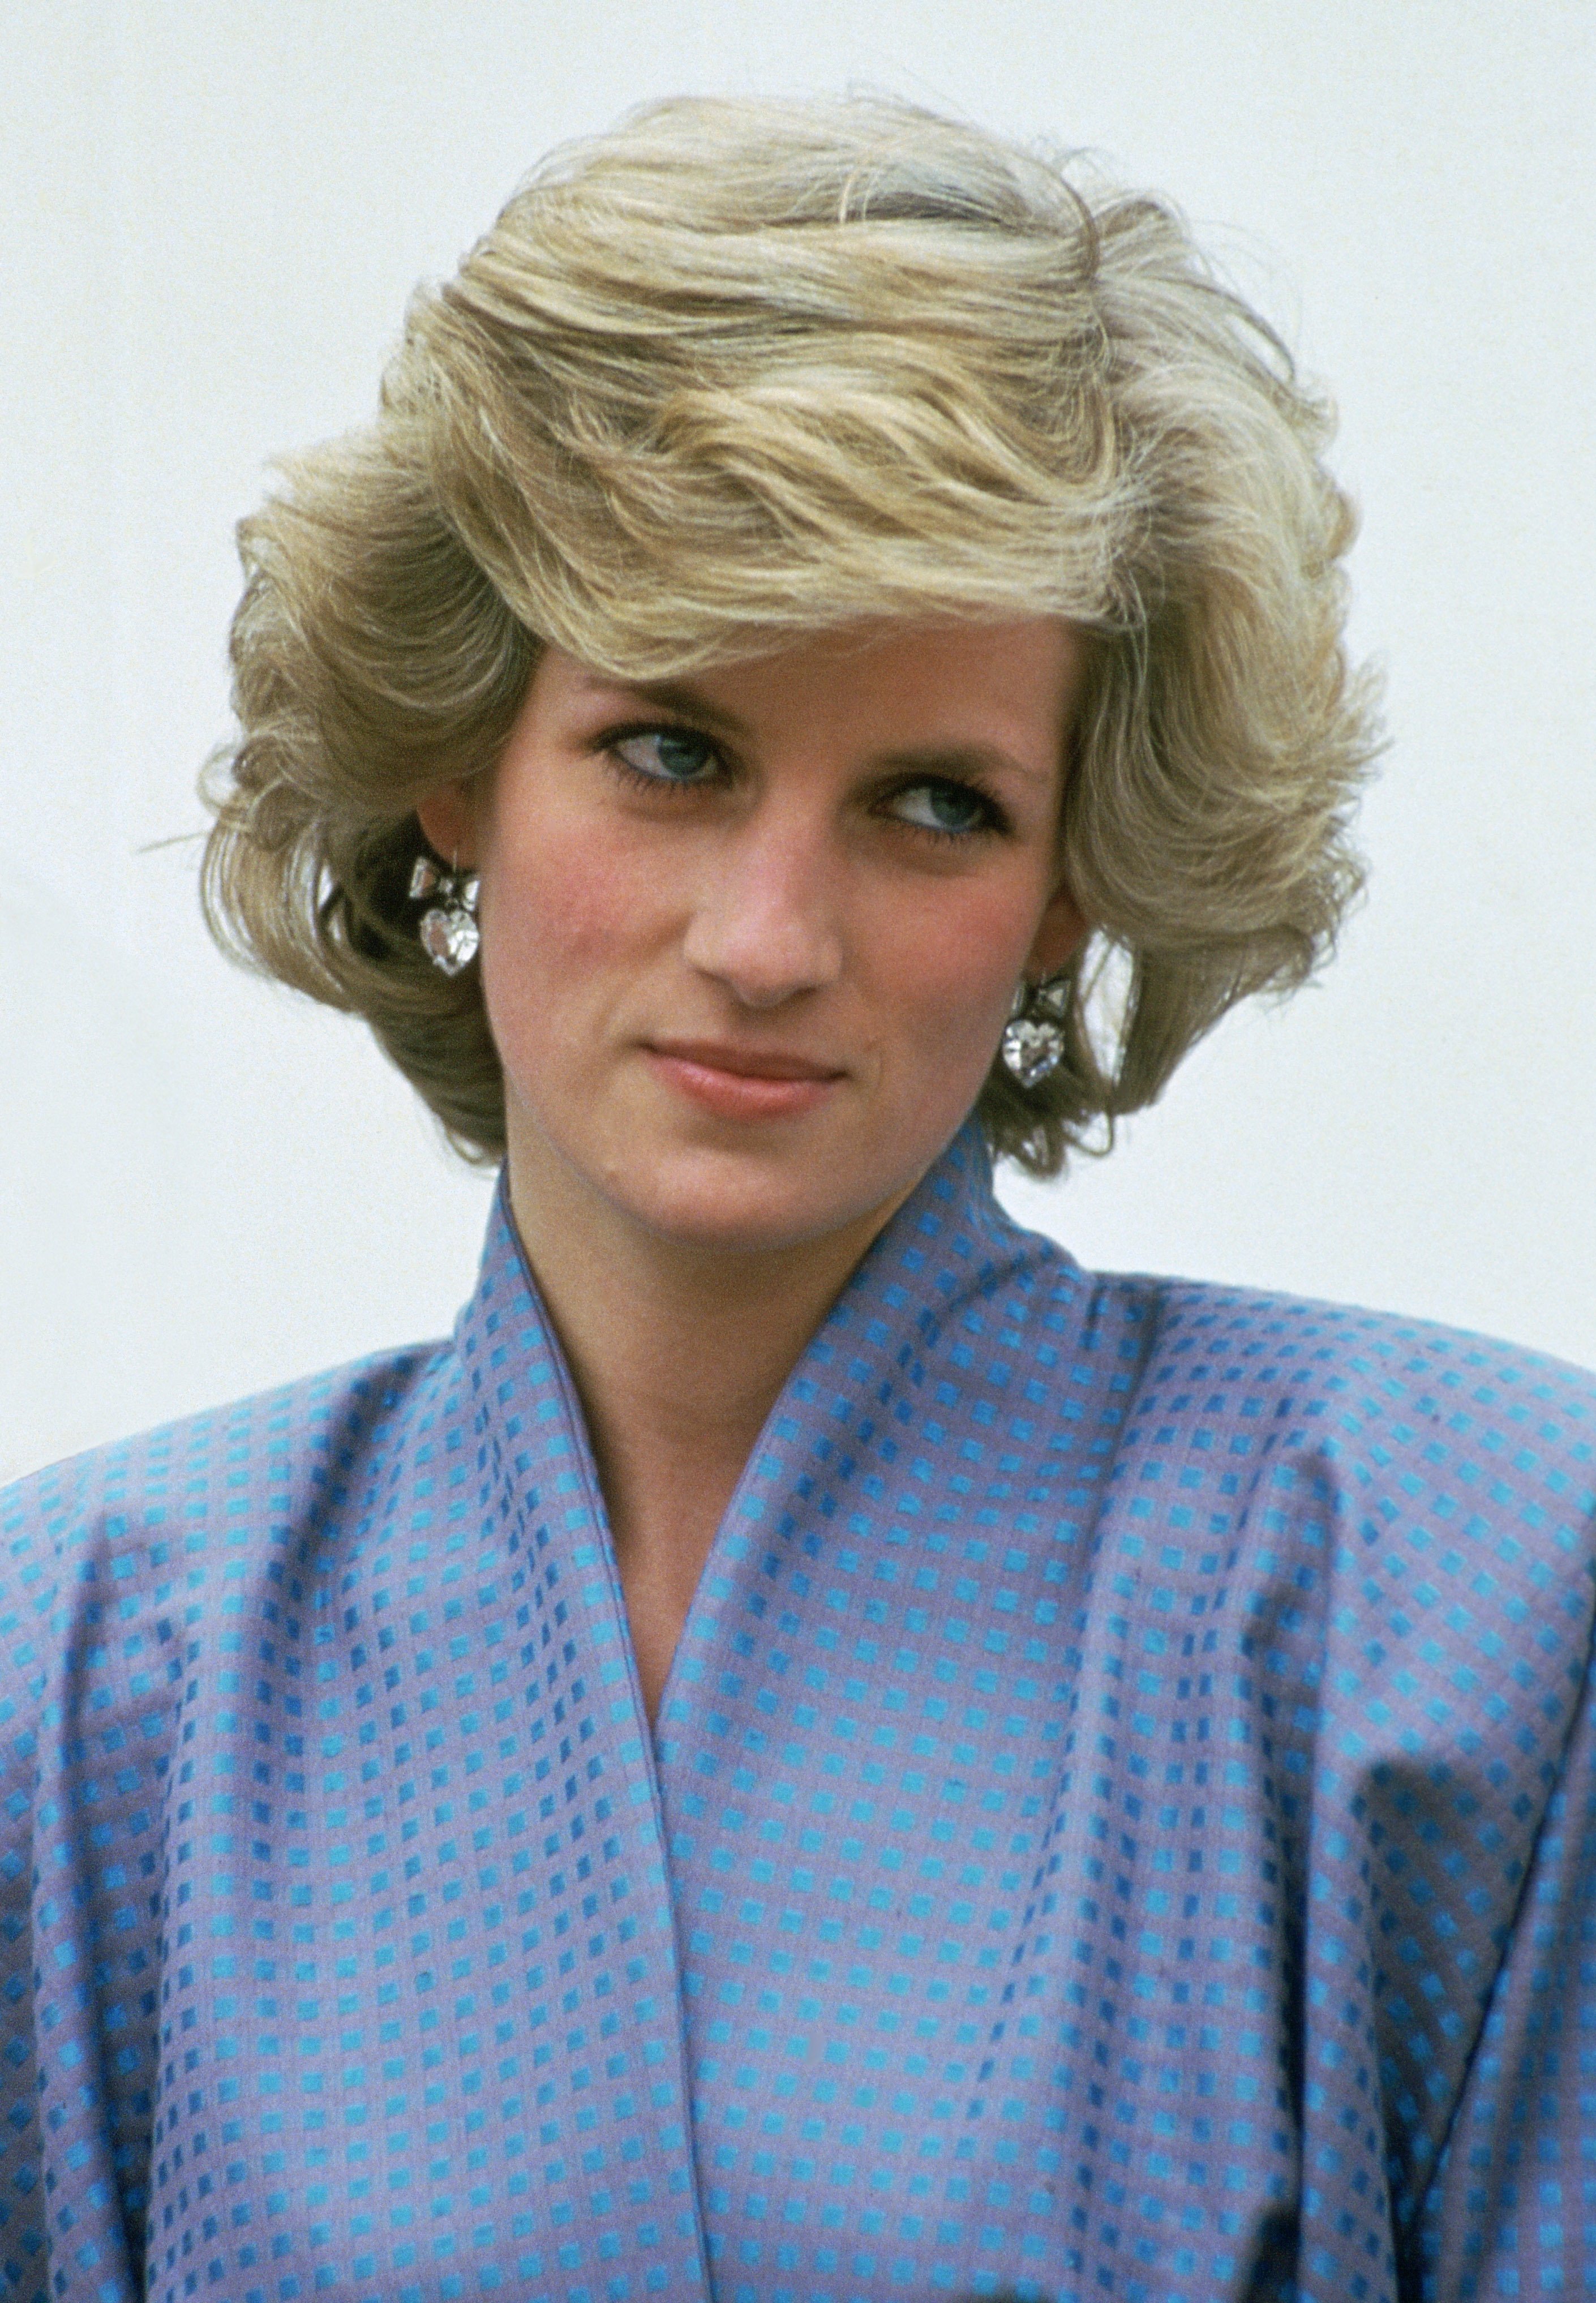 La princesa Diana fotografiada en Italia durante una visita oficial al extranjero. | Foto: Getty Images